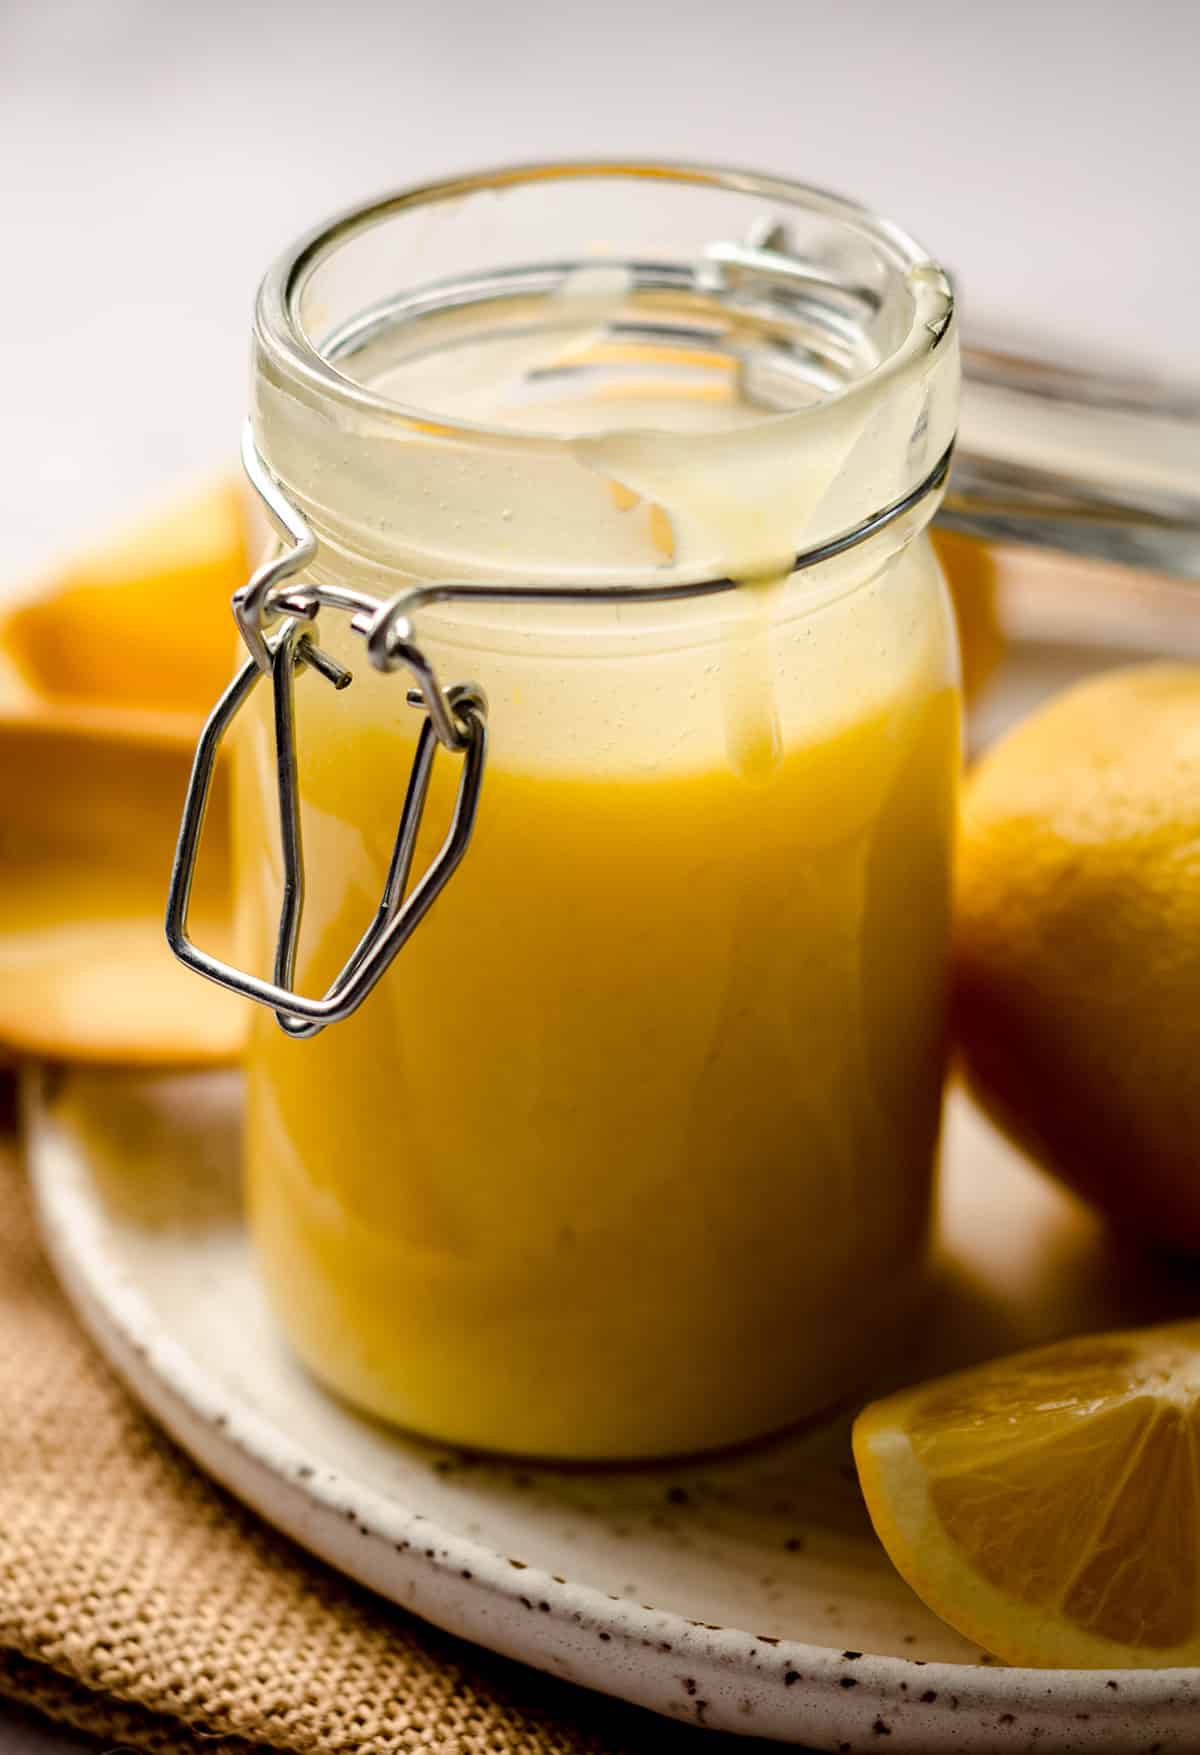 a jar of lemon curd on a plate with lemons